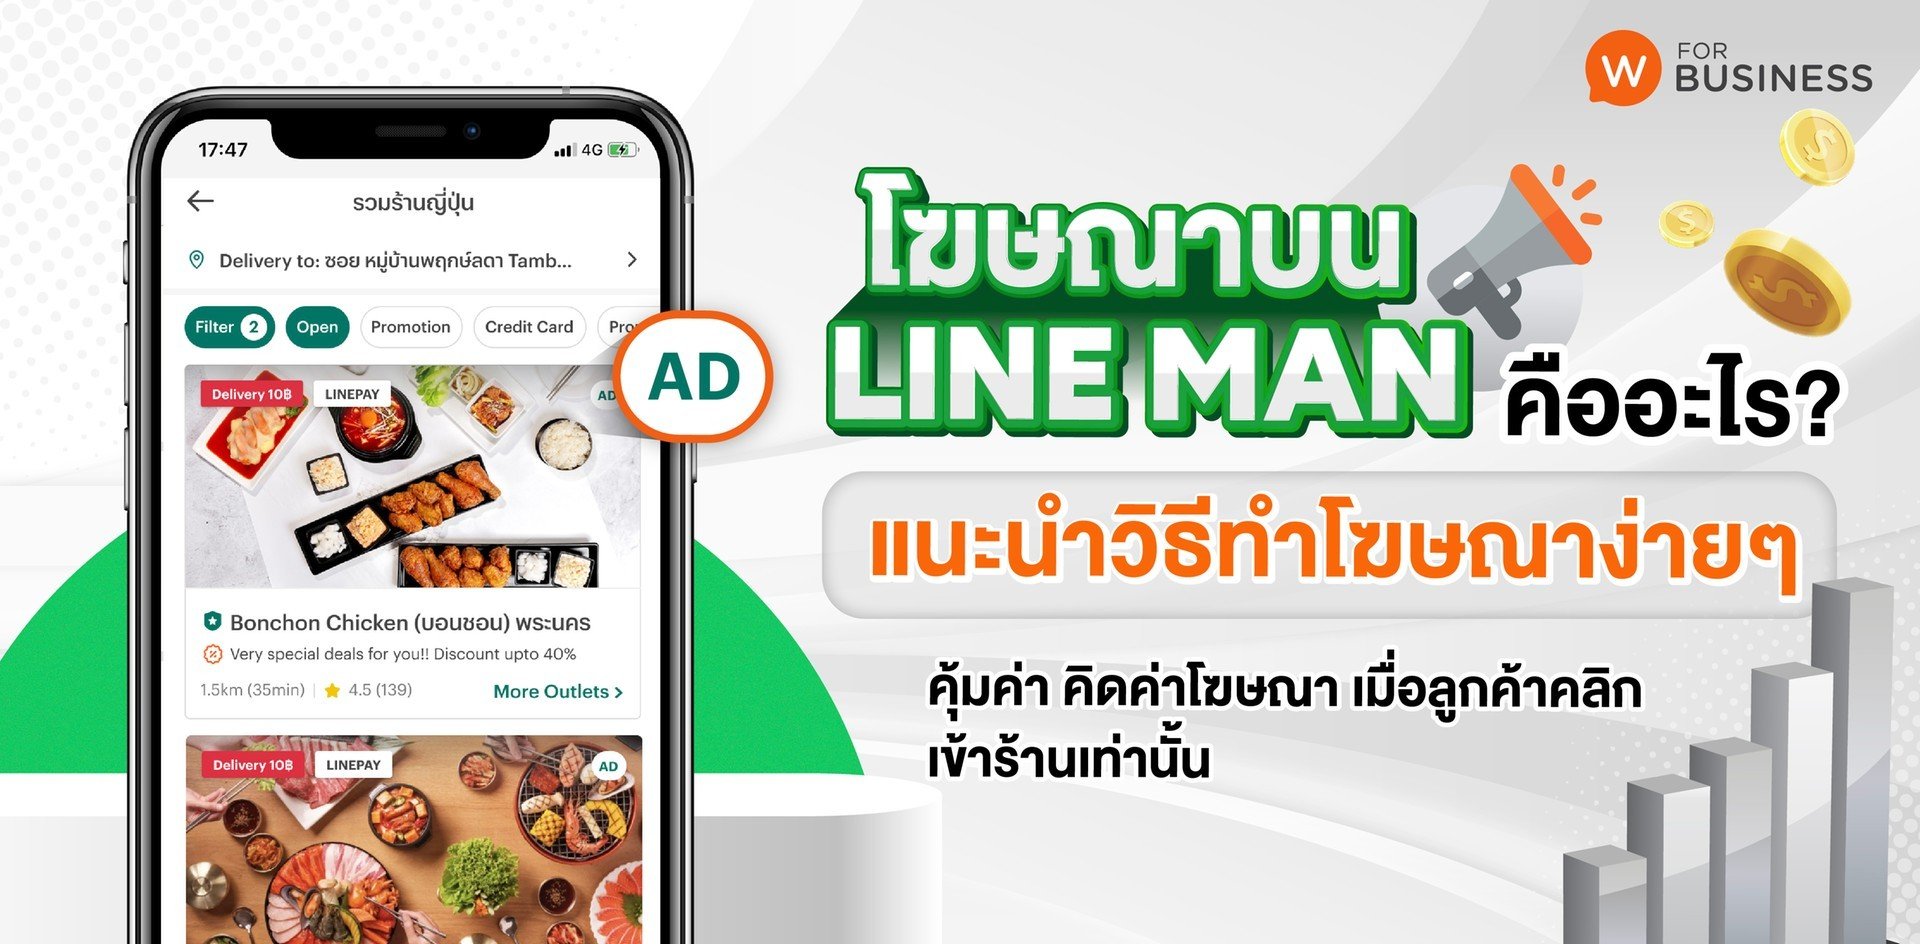 โฆษณาบน Line Man คืออะไร? แนะนำวิธีทำโฆษณาด้วยตัวเองง่ายๆ ทุกขั้นตอน